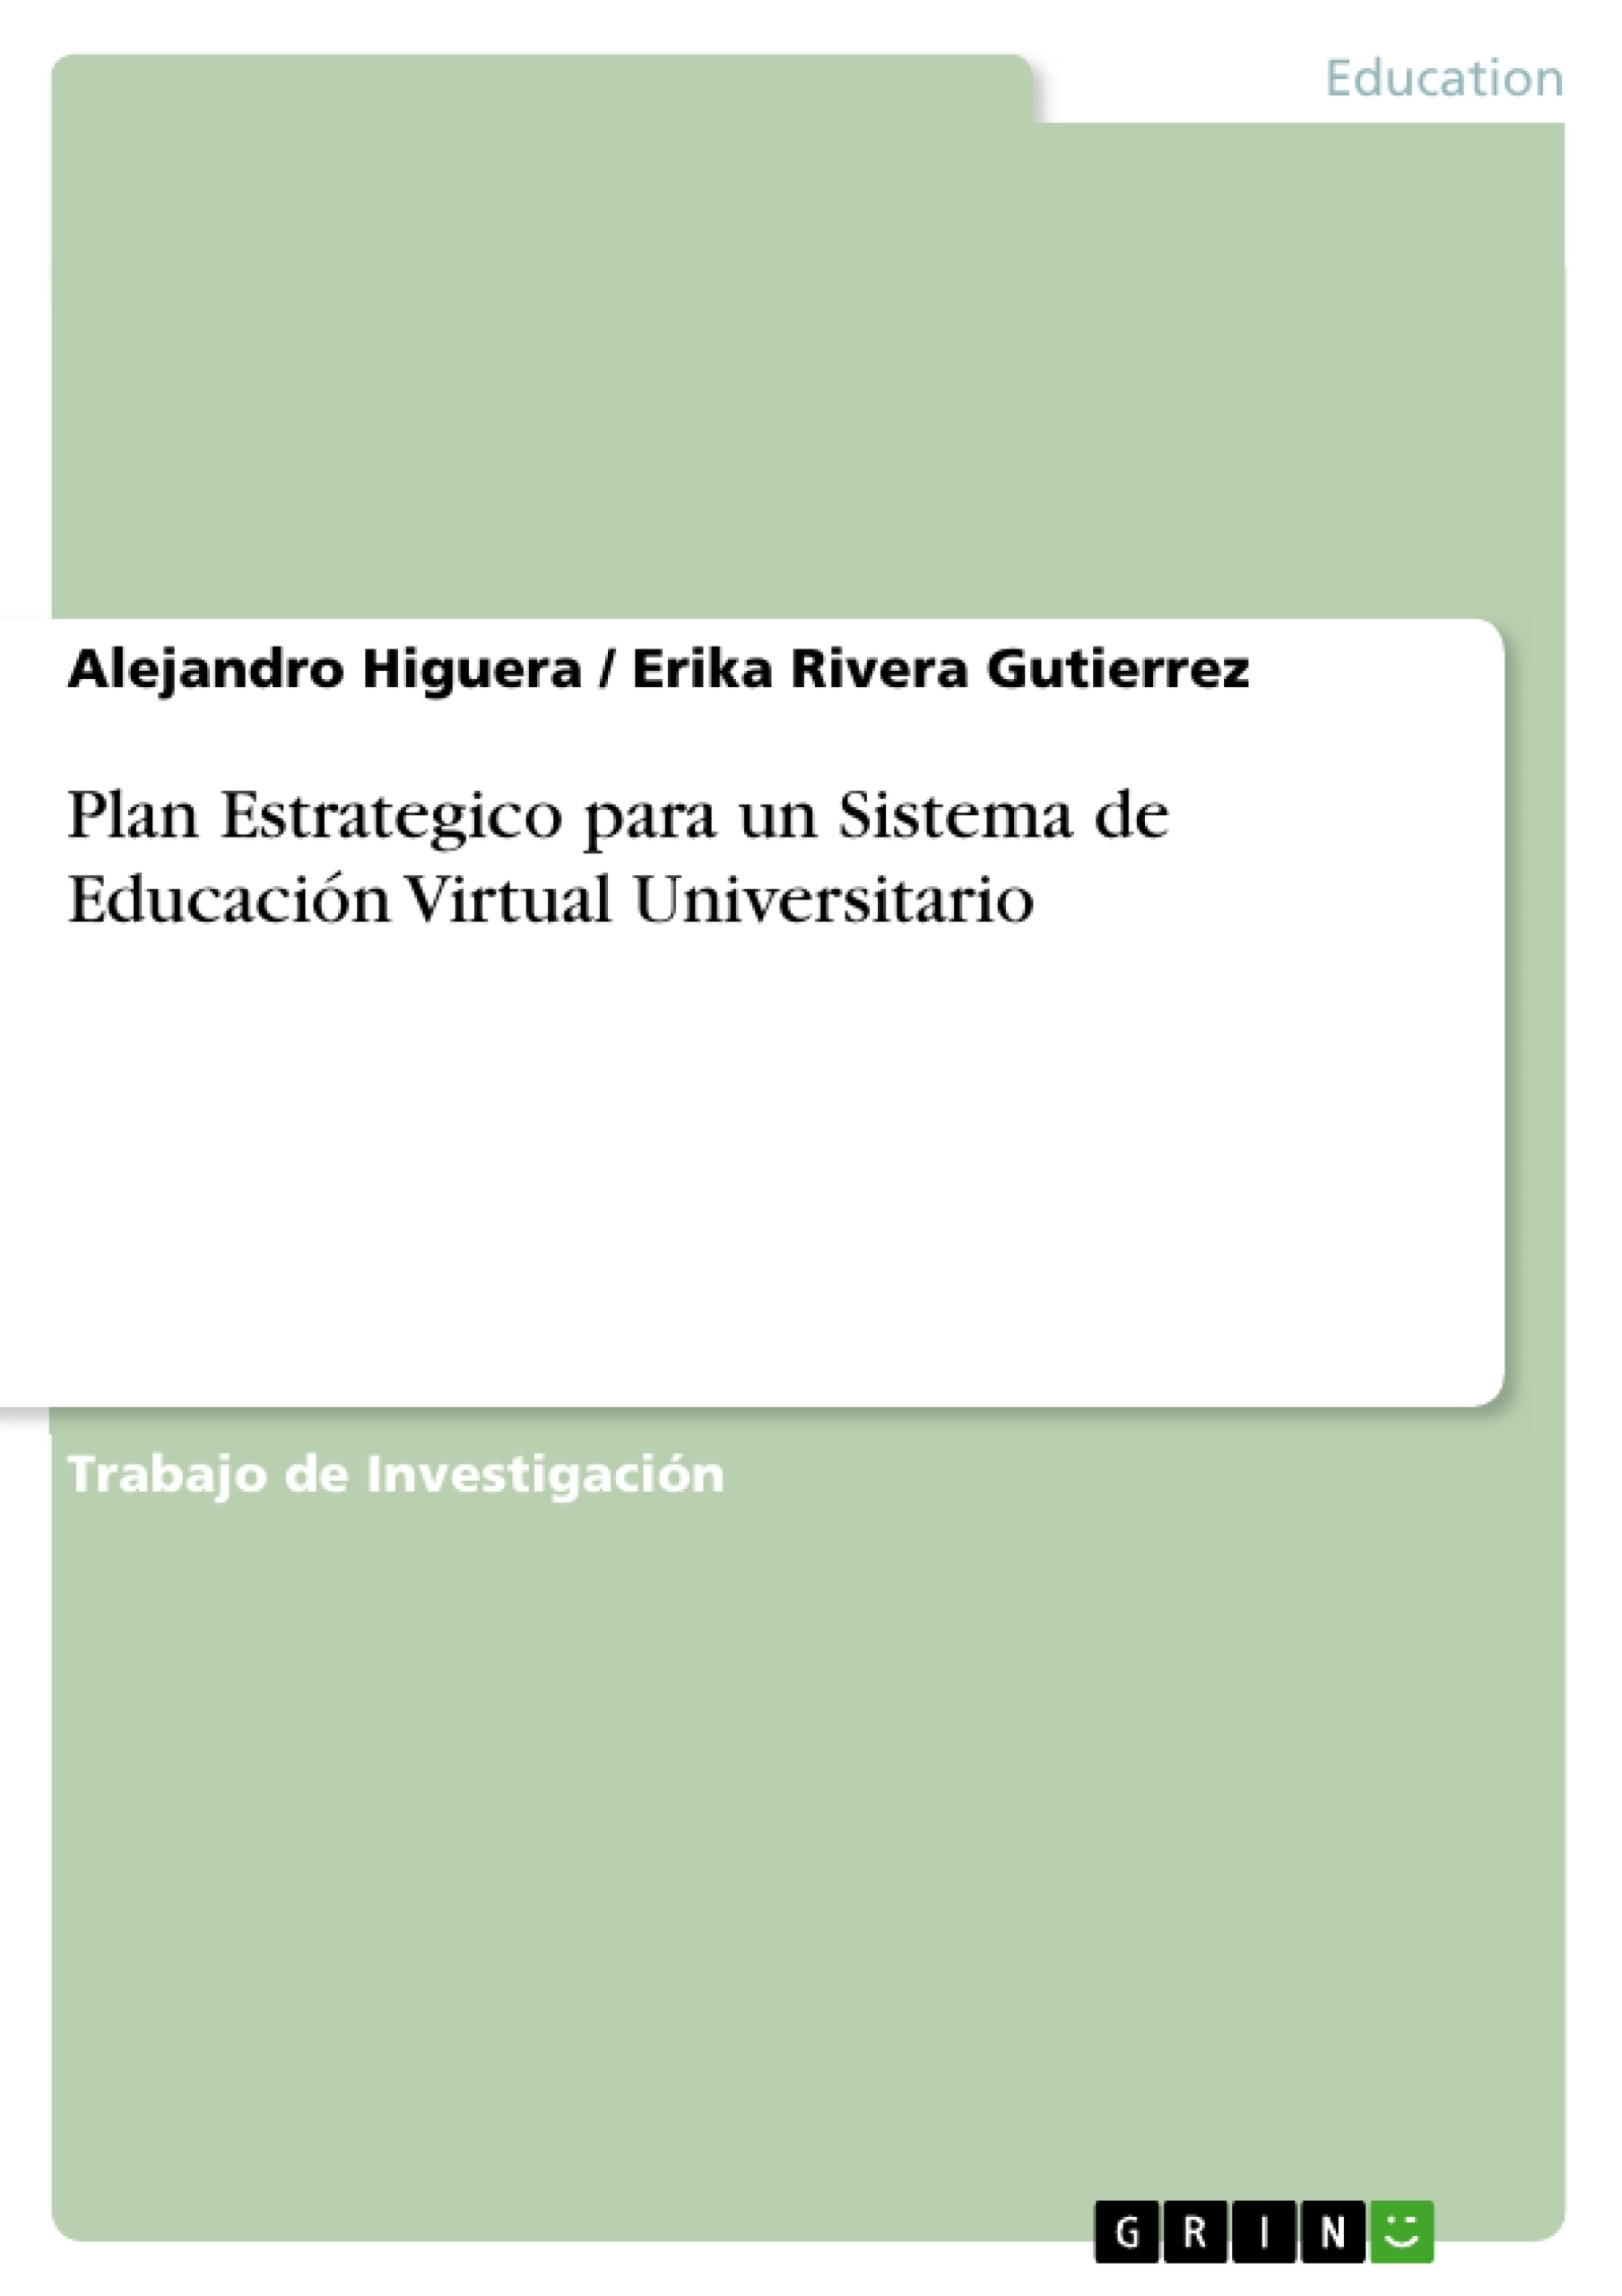 Título: Plan Estrategico para un Sistema de Educación Virtual Universitario